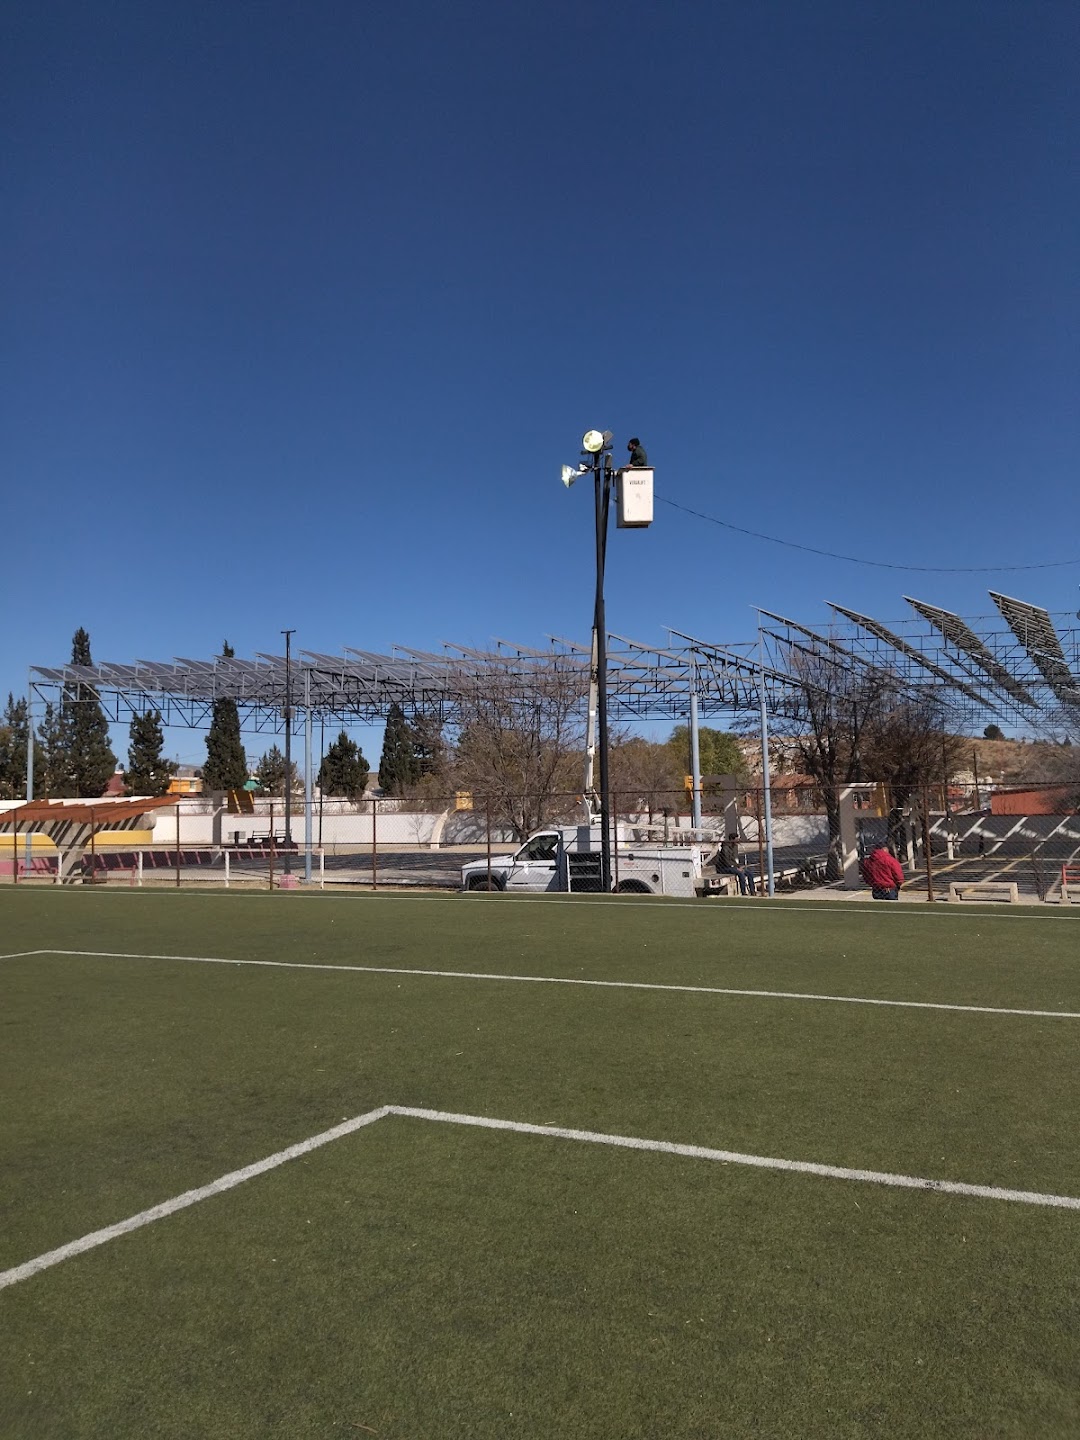 Granja Solar, Deportiva Col. Zapata, Hidalgo del Parral, Chihuahua